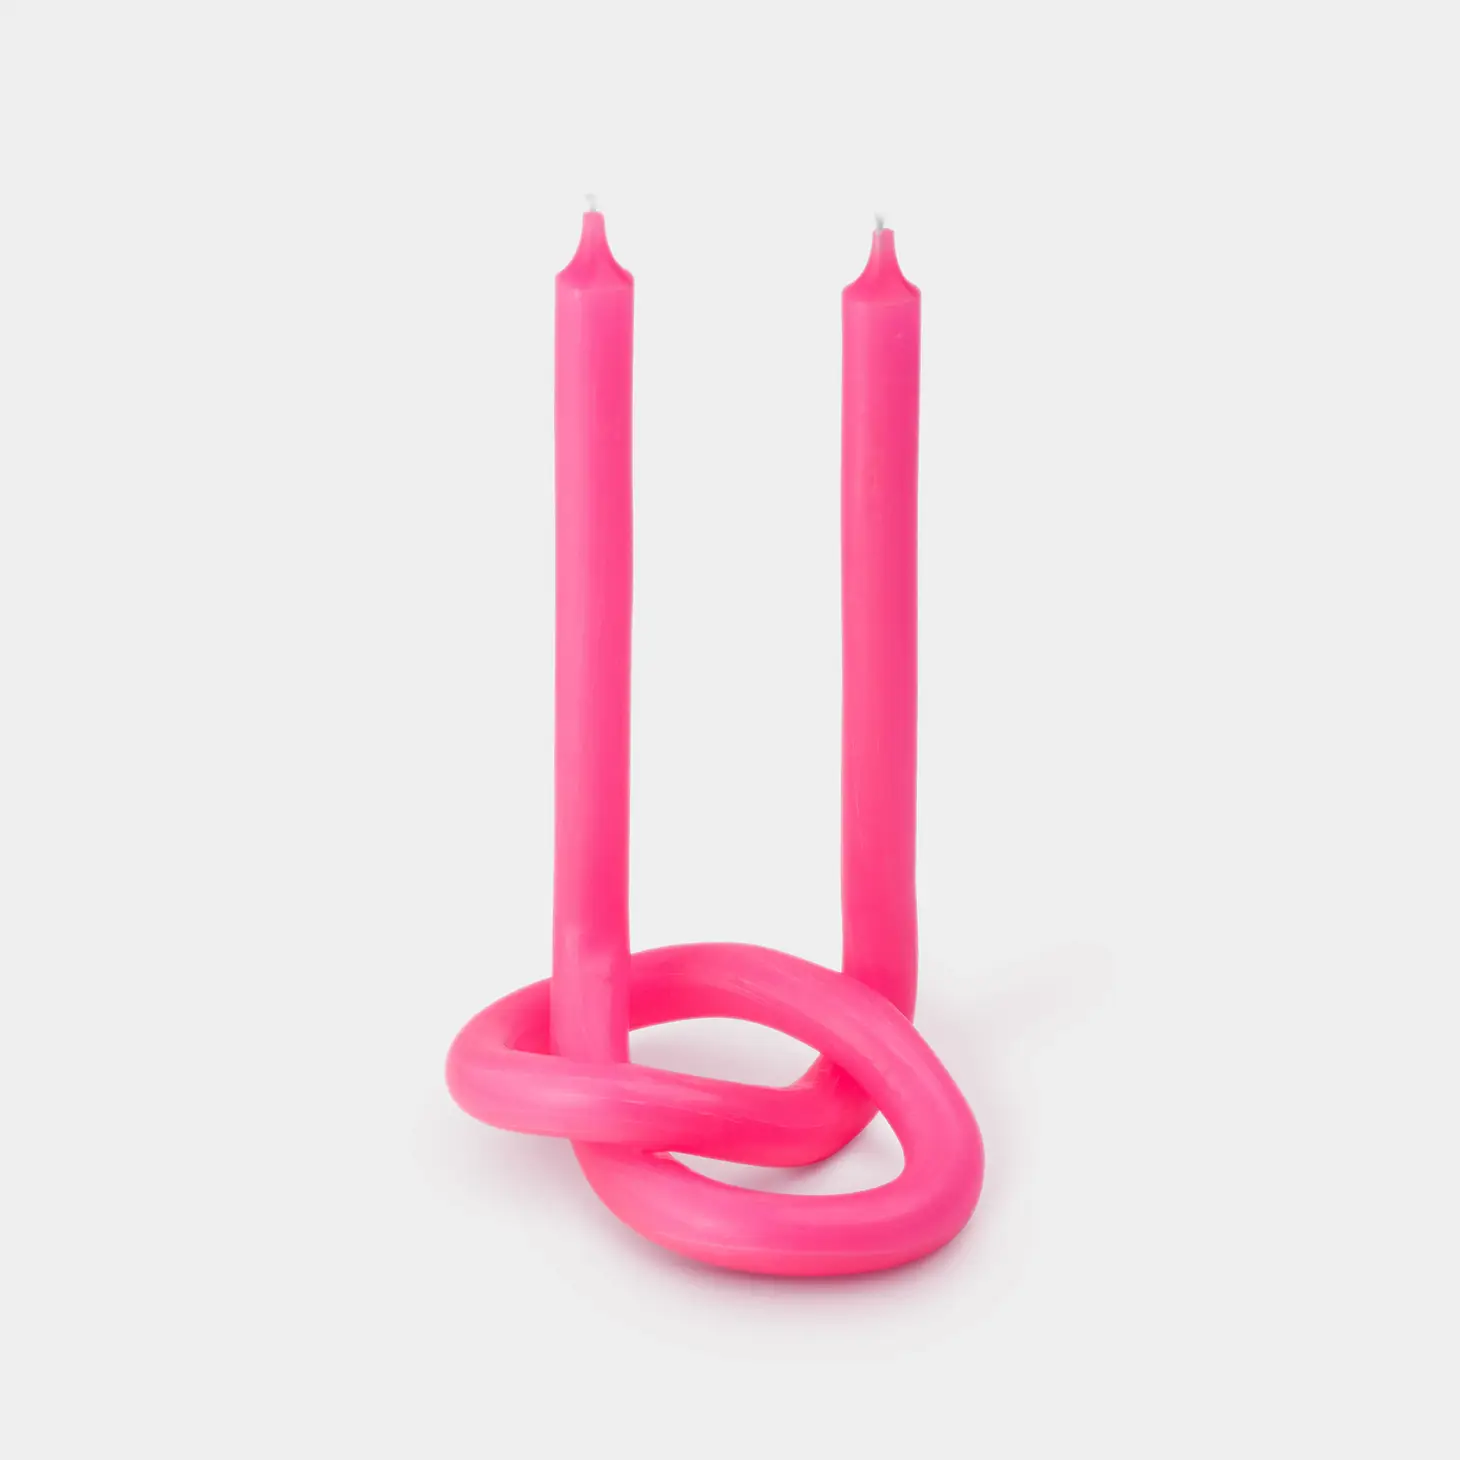 54 Celsius-Knot Candle Sticks by Lex Pott - Pink